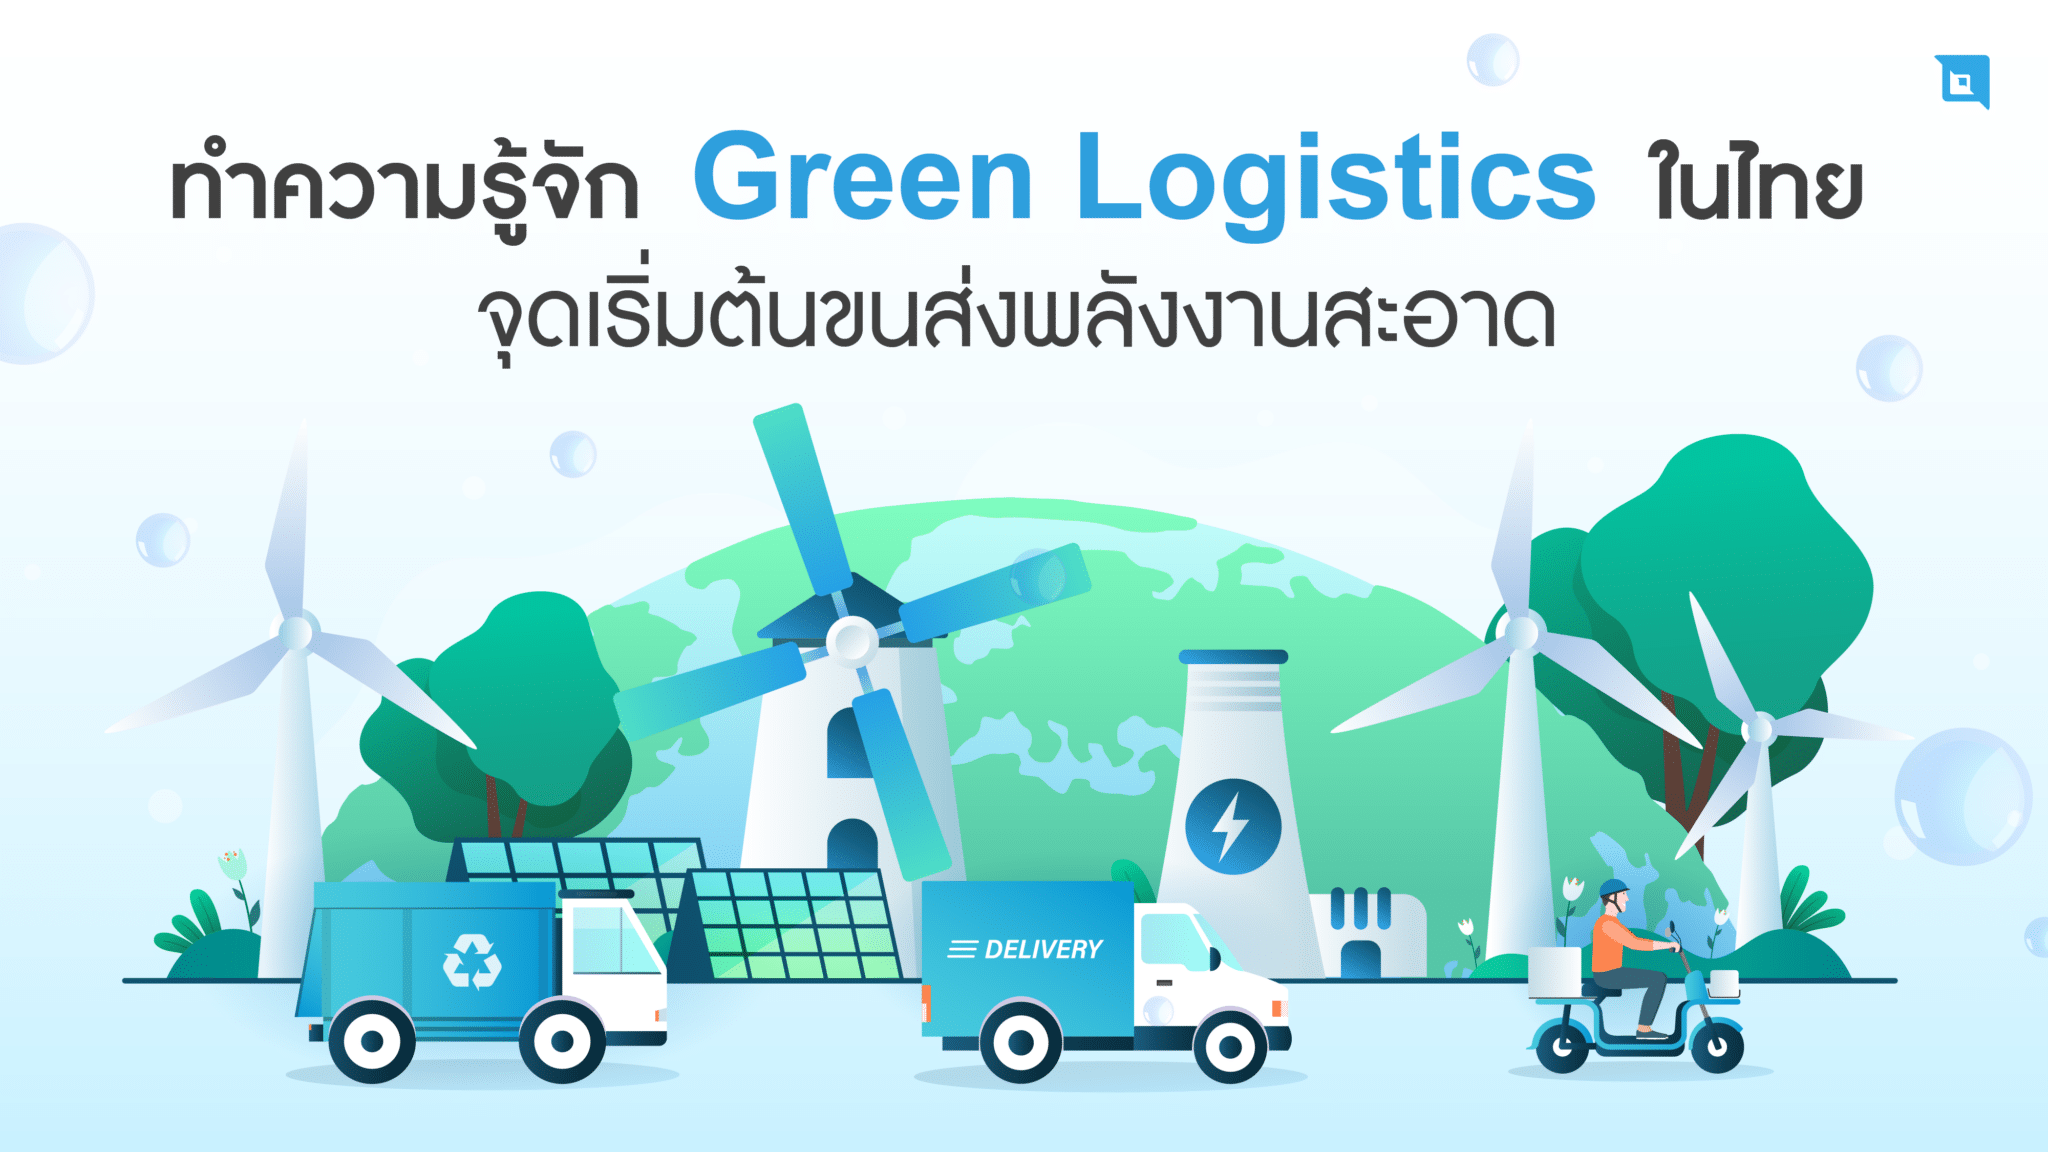 ทำความรู้จัก Green Logistics ในไทย จุดเริ่มต้นขนส่งพลังงานสะอาด